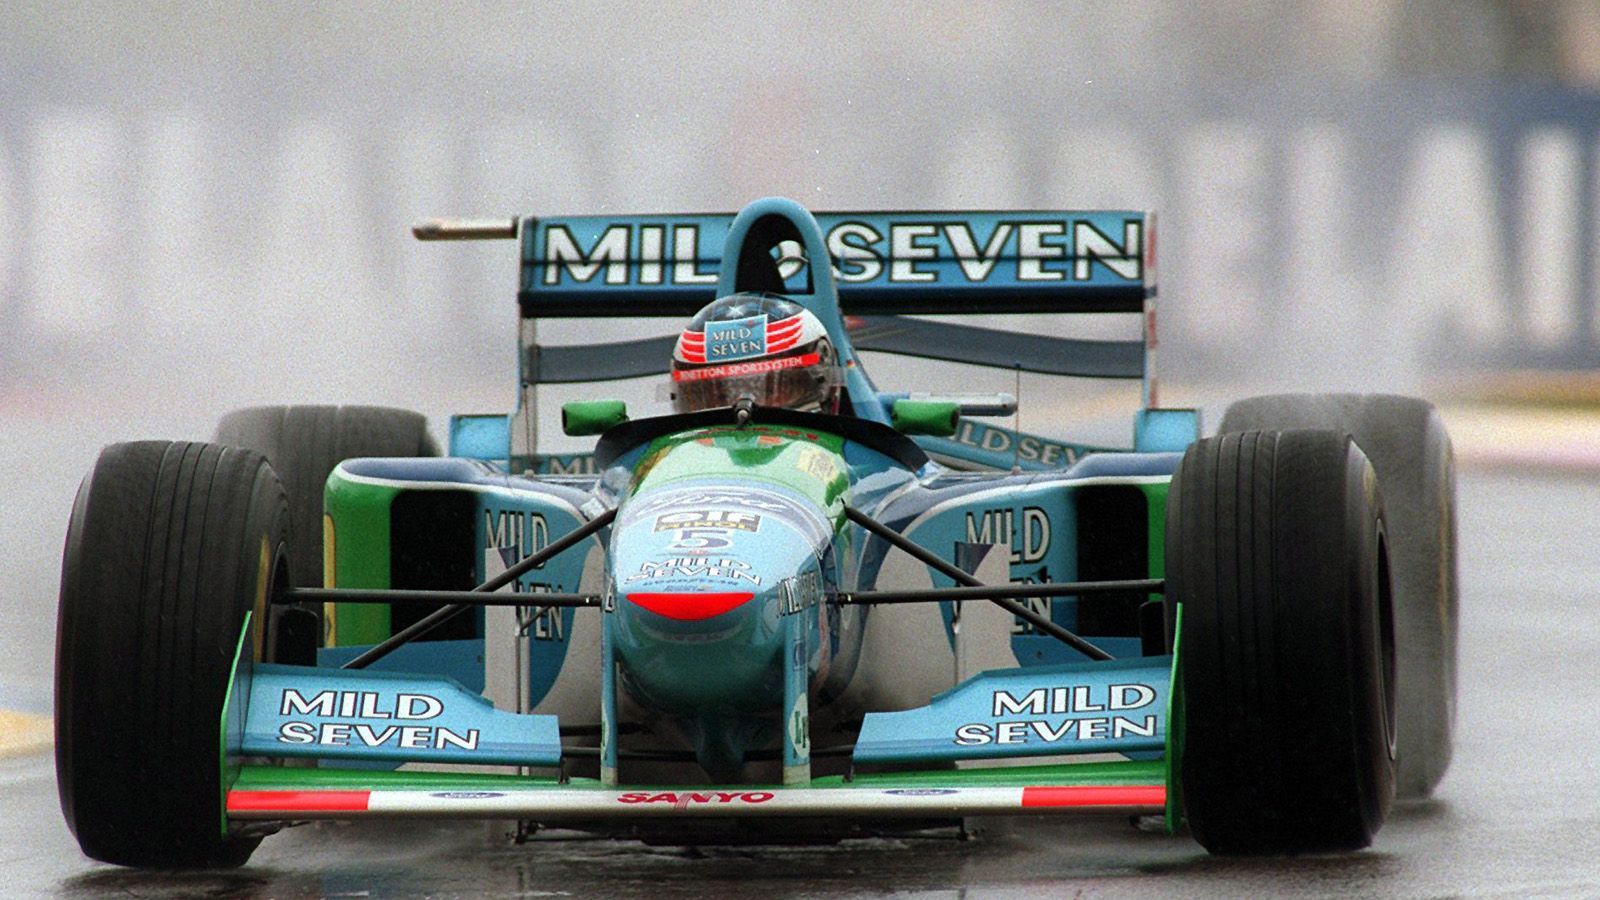 
                <strong>Benetton (1994) </strong><br>
                Anfang der 1990er Jahre sorgten elektronische Entwicklungen für ein neues Fahrgefühl. Die Wagen wurden mit aktiven Fahrwerken, Traktionskontrollen und einem Anti-Blockier-System (ABS) ausgestattet. Zur Saison 1994 wurden die Fahrhilfen allerdings wieder abgeschafft. Das machte das Fahren für Michael Schumacher (Foto) und Co. wieder um einiges anspruchsvoller und unberechenbarer. Als Reaktion auf die tödlichen Unfälle von Ayrton Senna und Roland Ratzenberger 1994 ordnete die FIA vergrößerte Cockpits an. Auch höhere Seitenwände sollten ab Mitte der 1990er zusätzlich zum Schutz der Fahrer beitragen. 
              